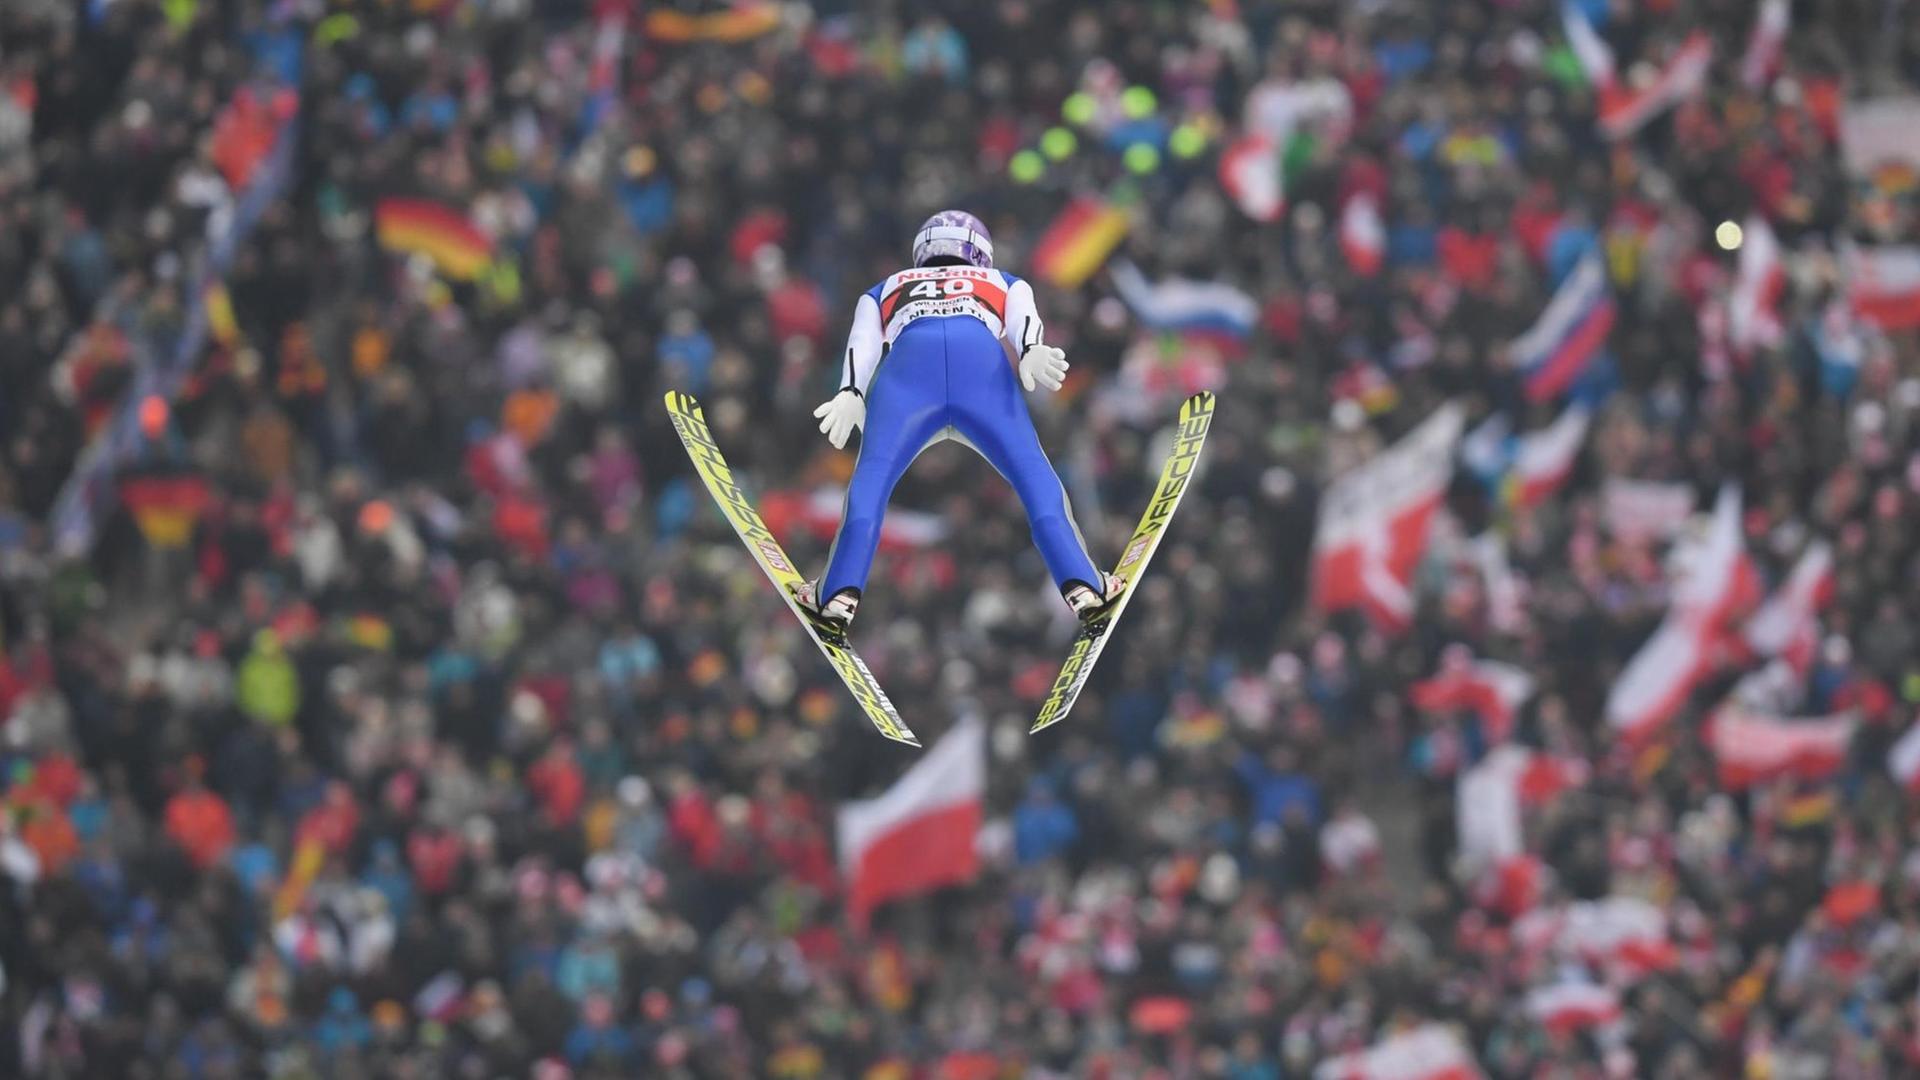 Andreas Wellinger springt von der Großschanze in Willingen (Hessen). Im Hintergrund ist das Publikum zu sehen.